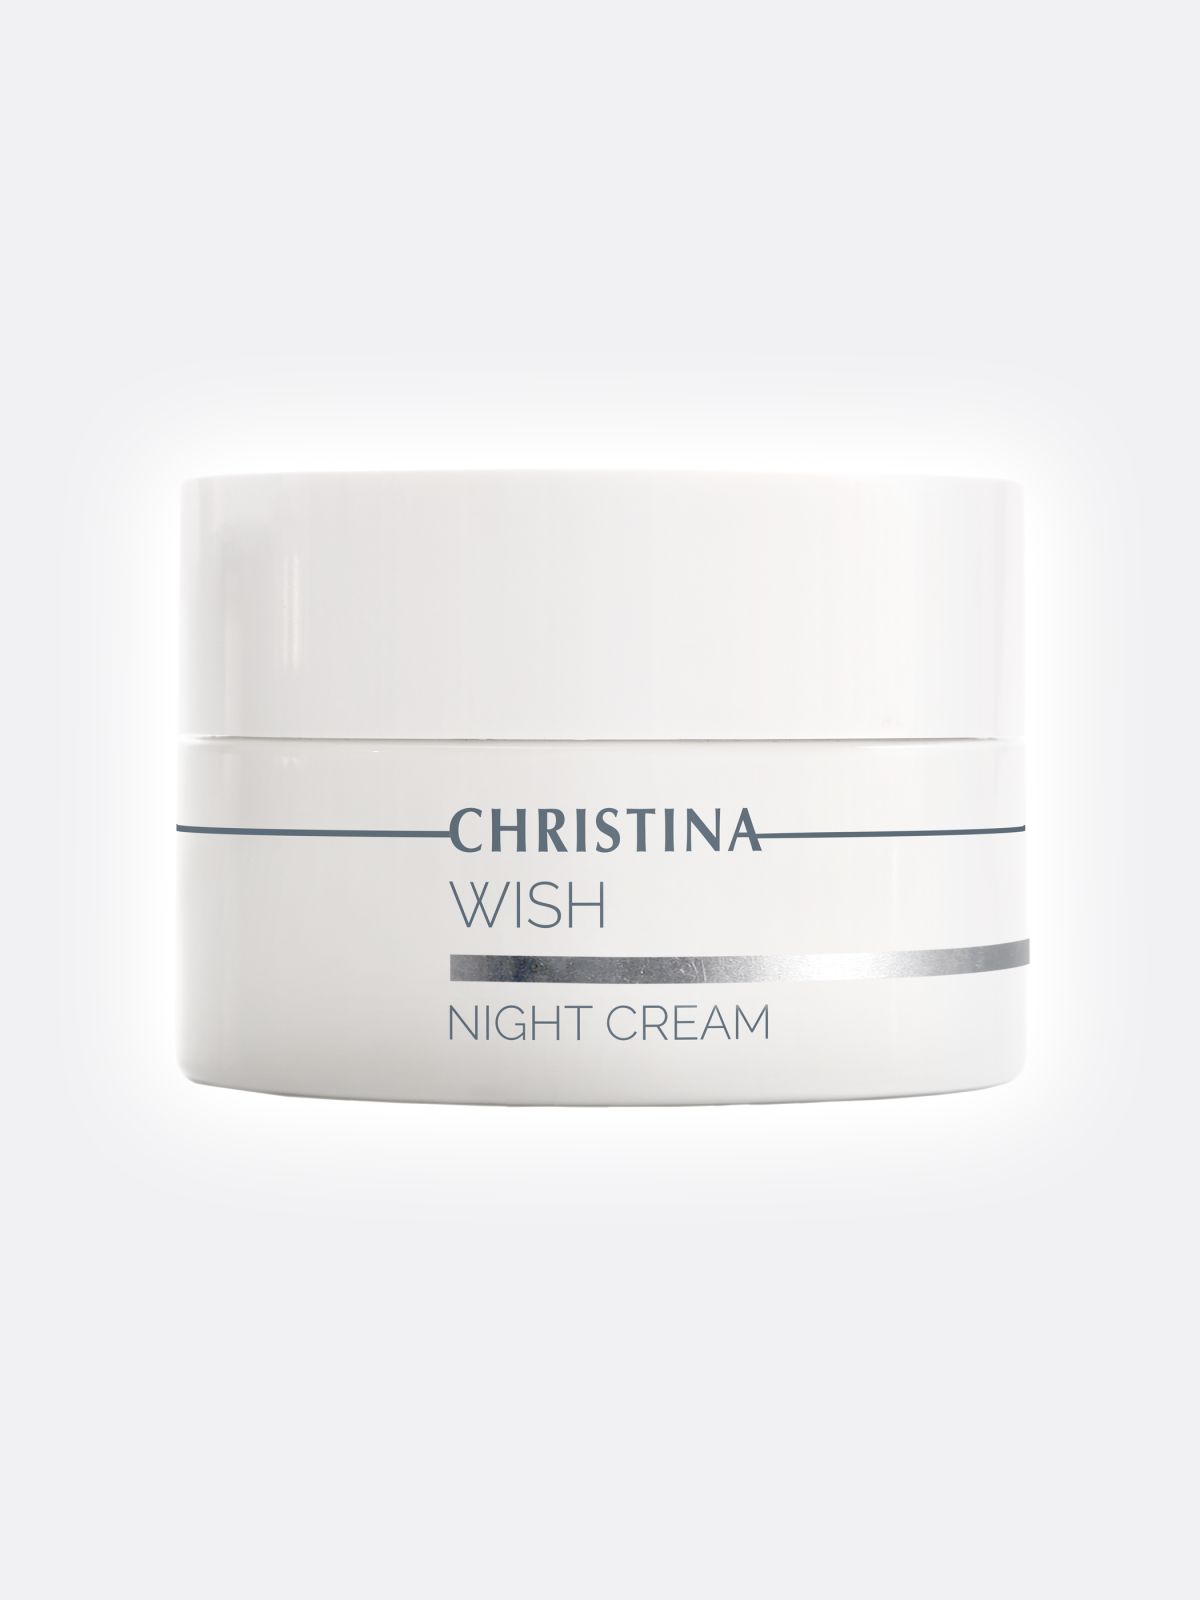  קרם לילה מתקן ומשקם לעור בוגר Wish Night Cream של CHRISTINA